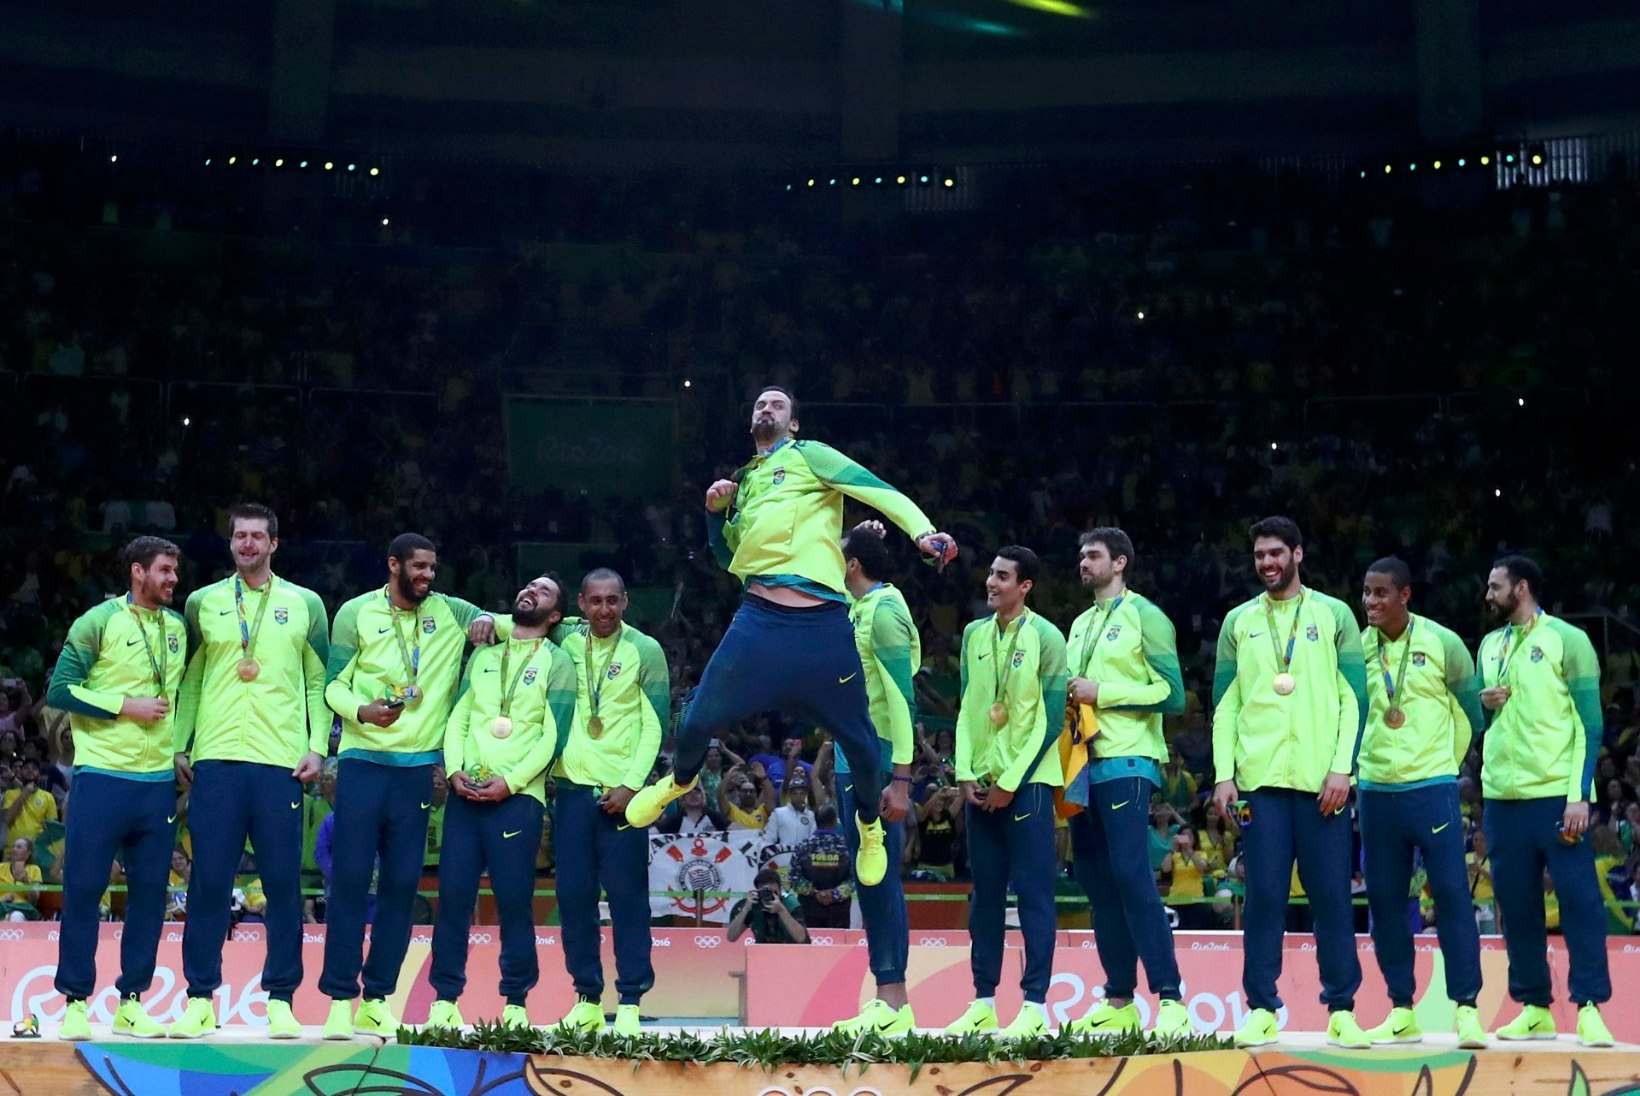 PROTOKOLL | Vaata ja loe, kes tulid Rio olümpia viimasel päeval medalivõitjateks